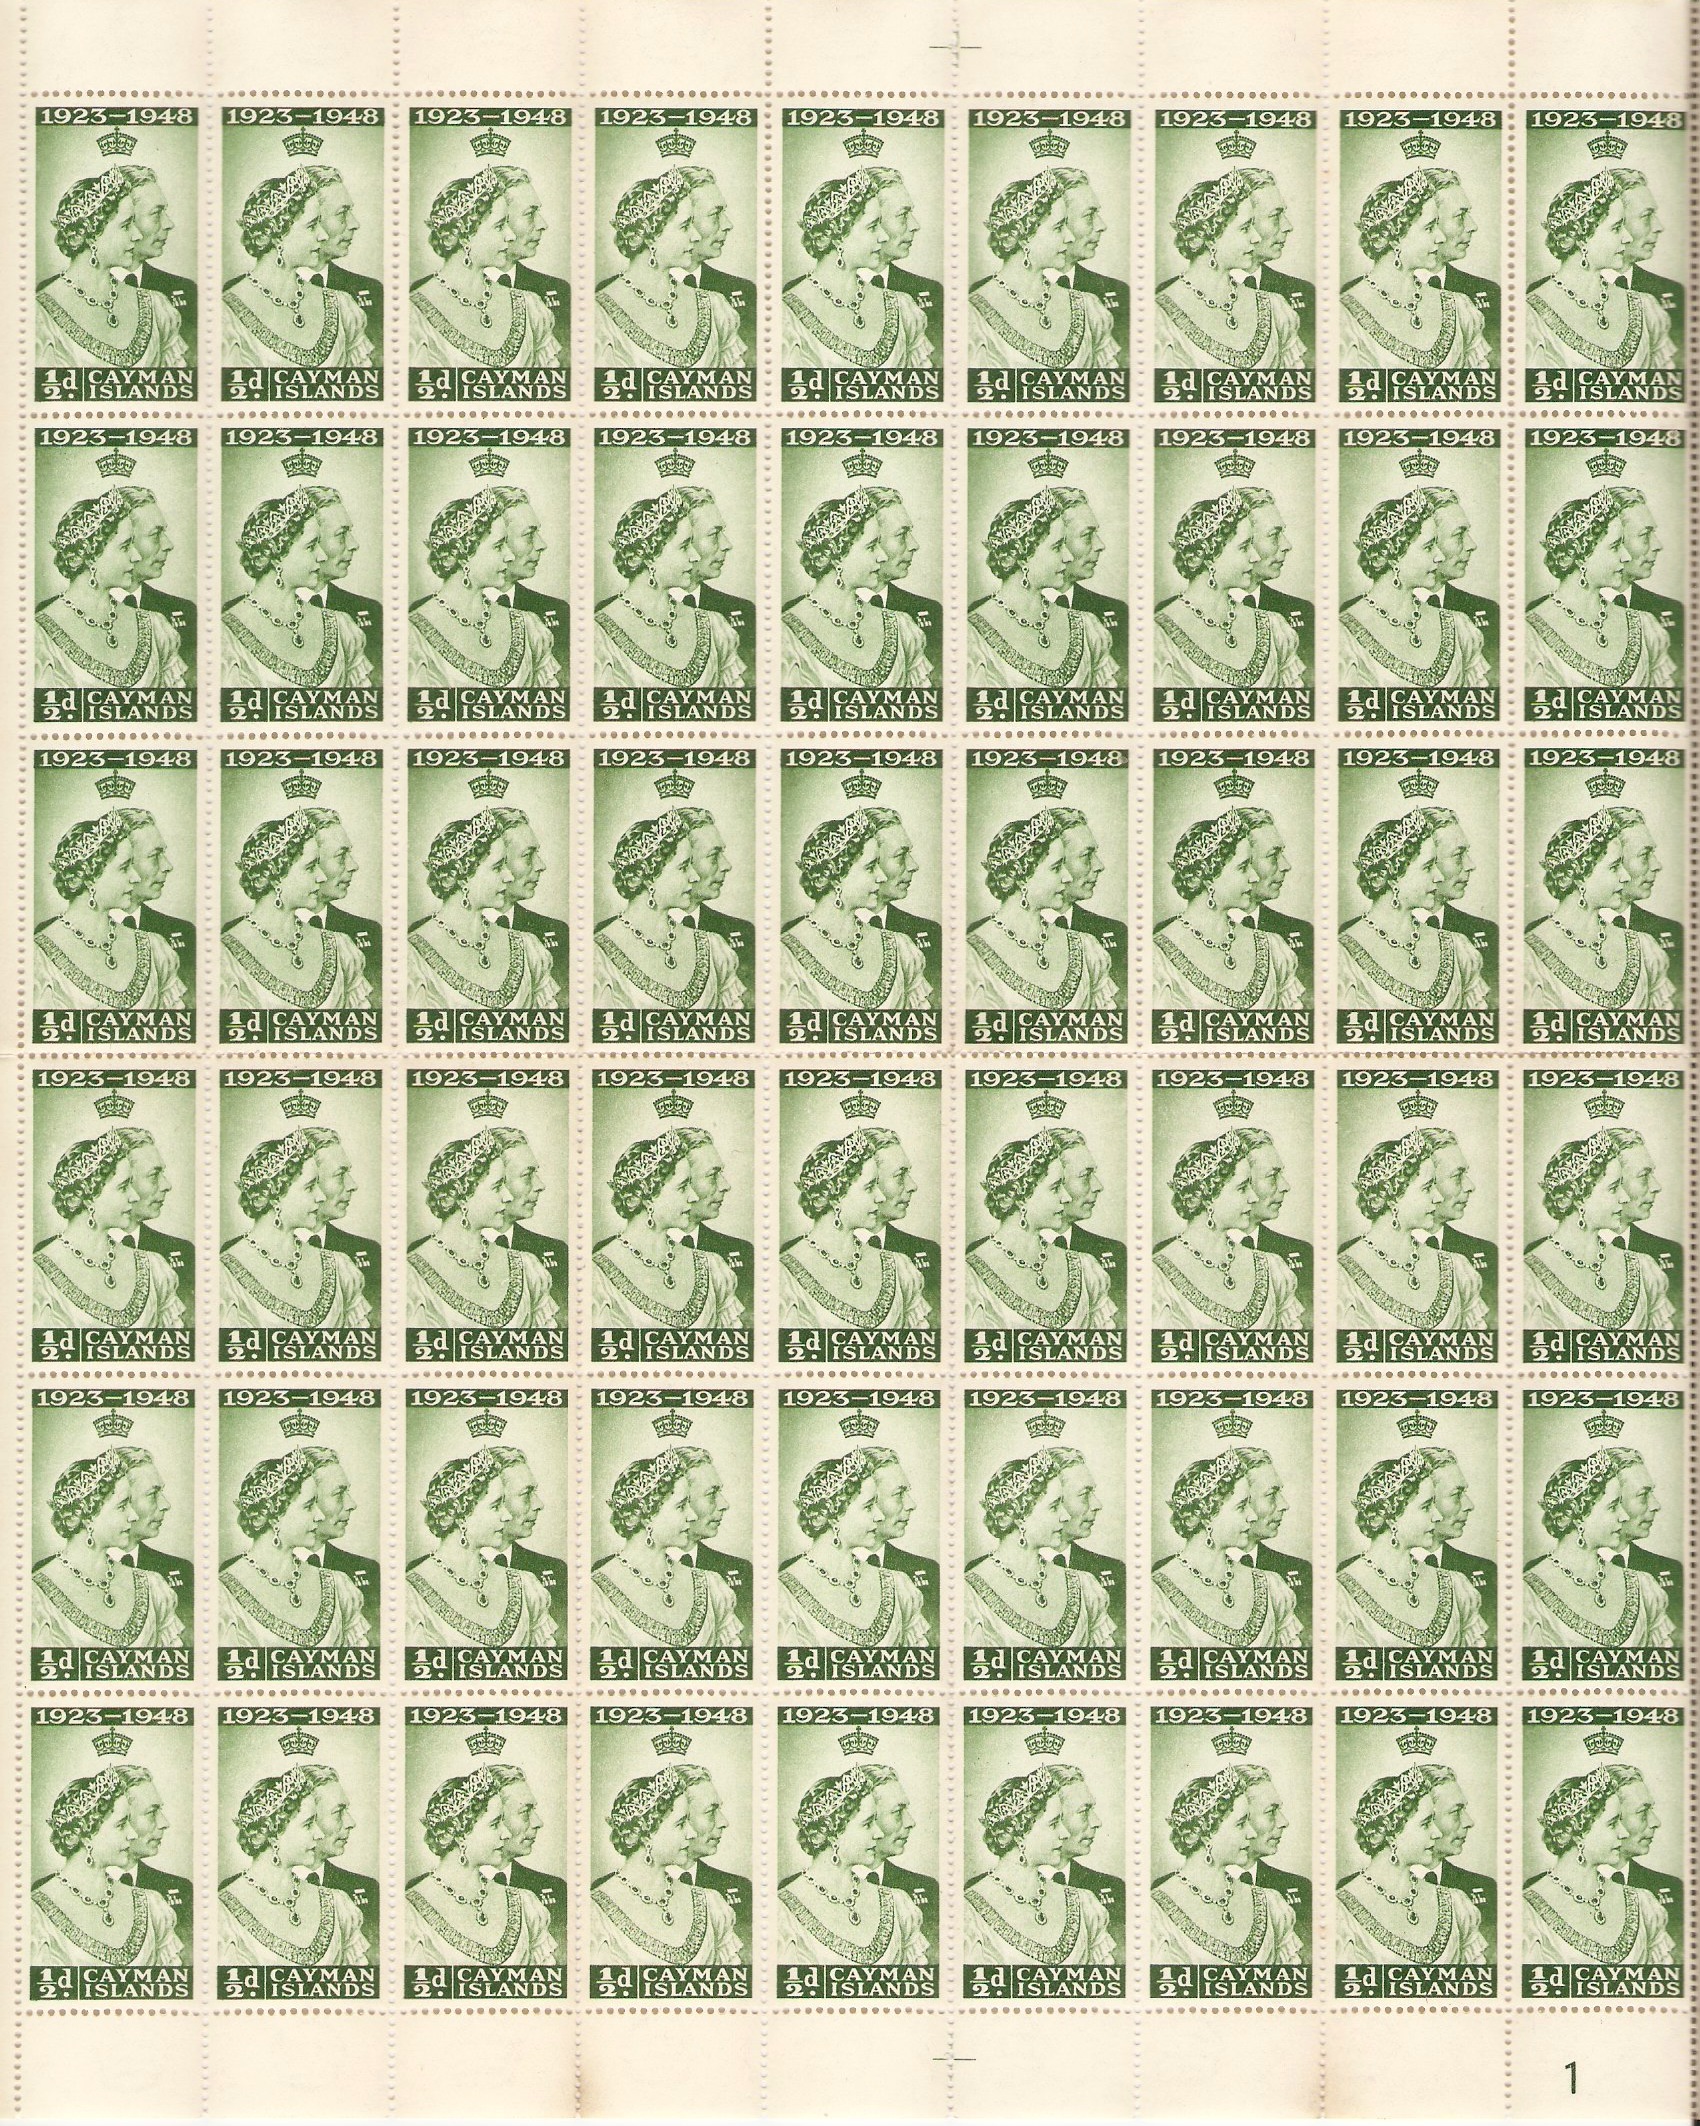 Cayman Islands 1948 d Green Silver Wedding Stamp Sheet. SG129.